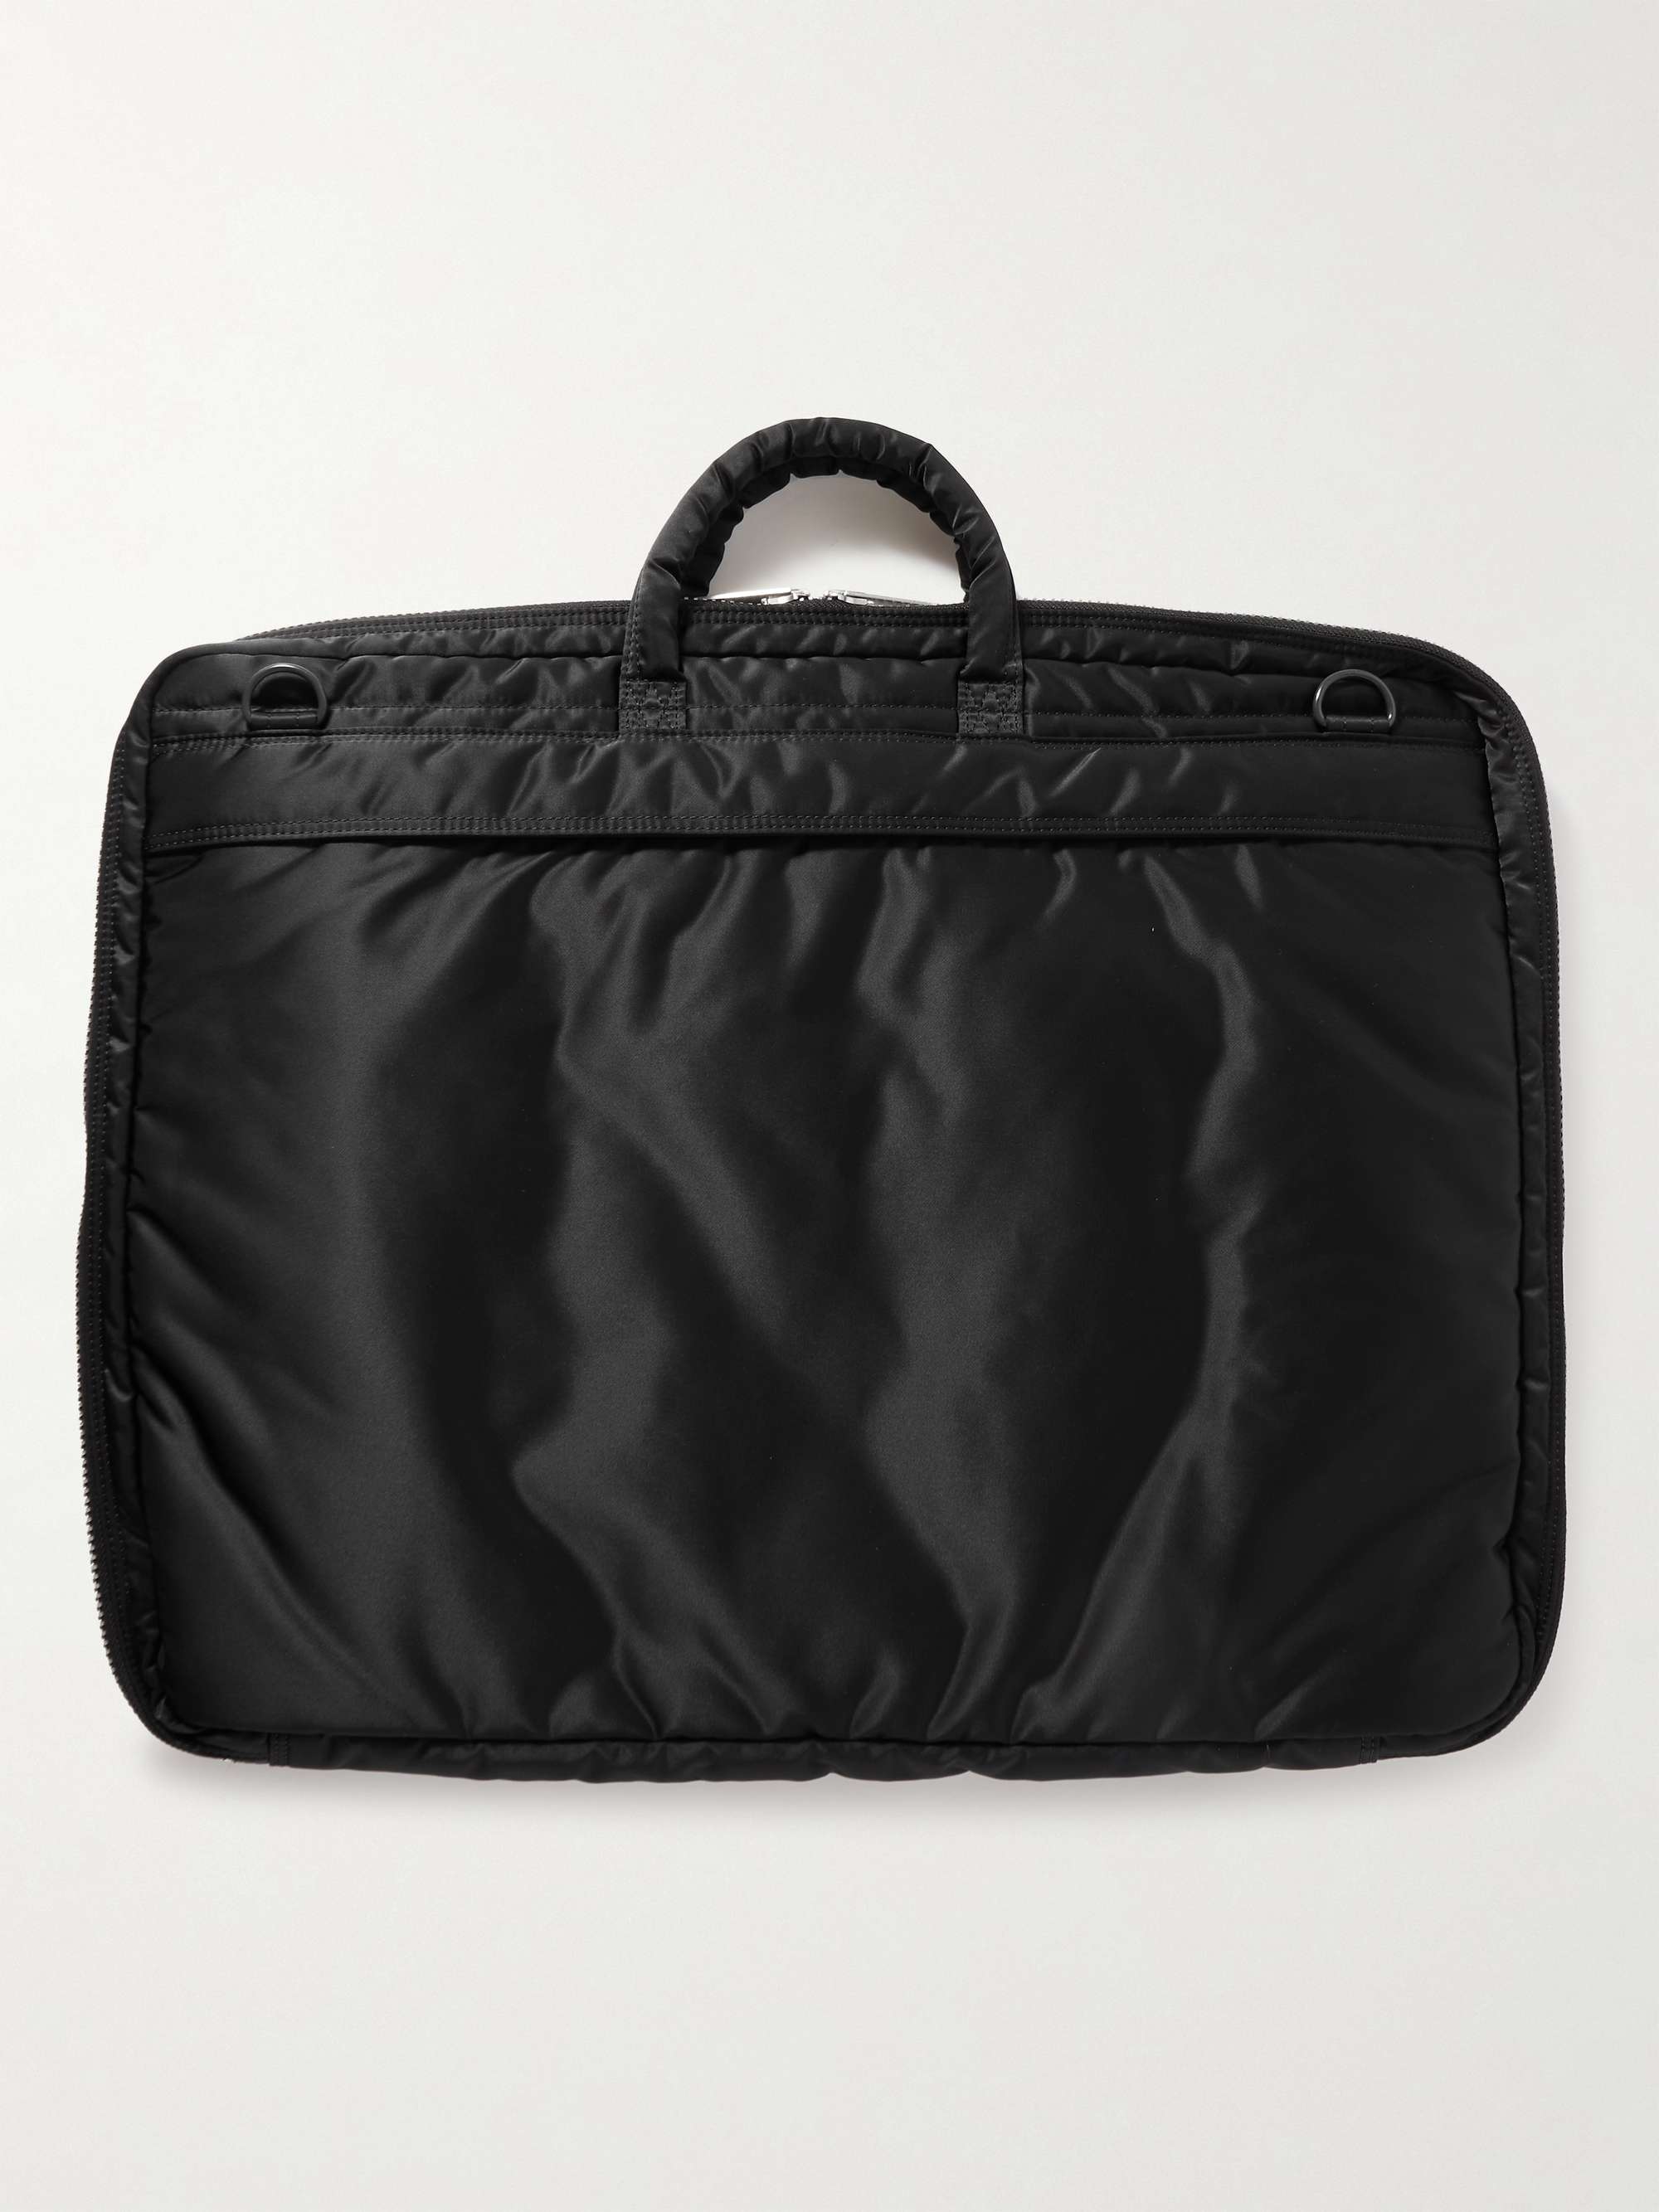 PORTER-YOSHIDA & CO Tanker 2Way Nylon Garment Bag for Men | MR PORTER